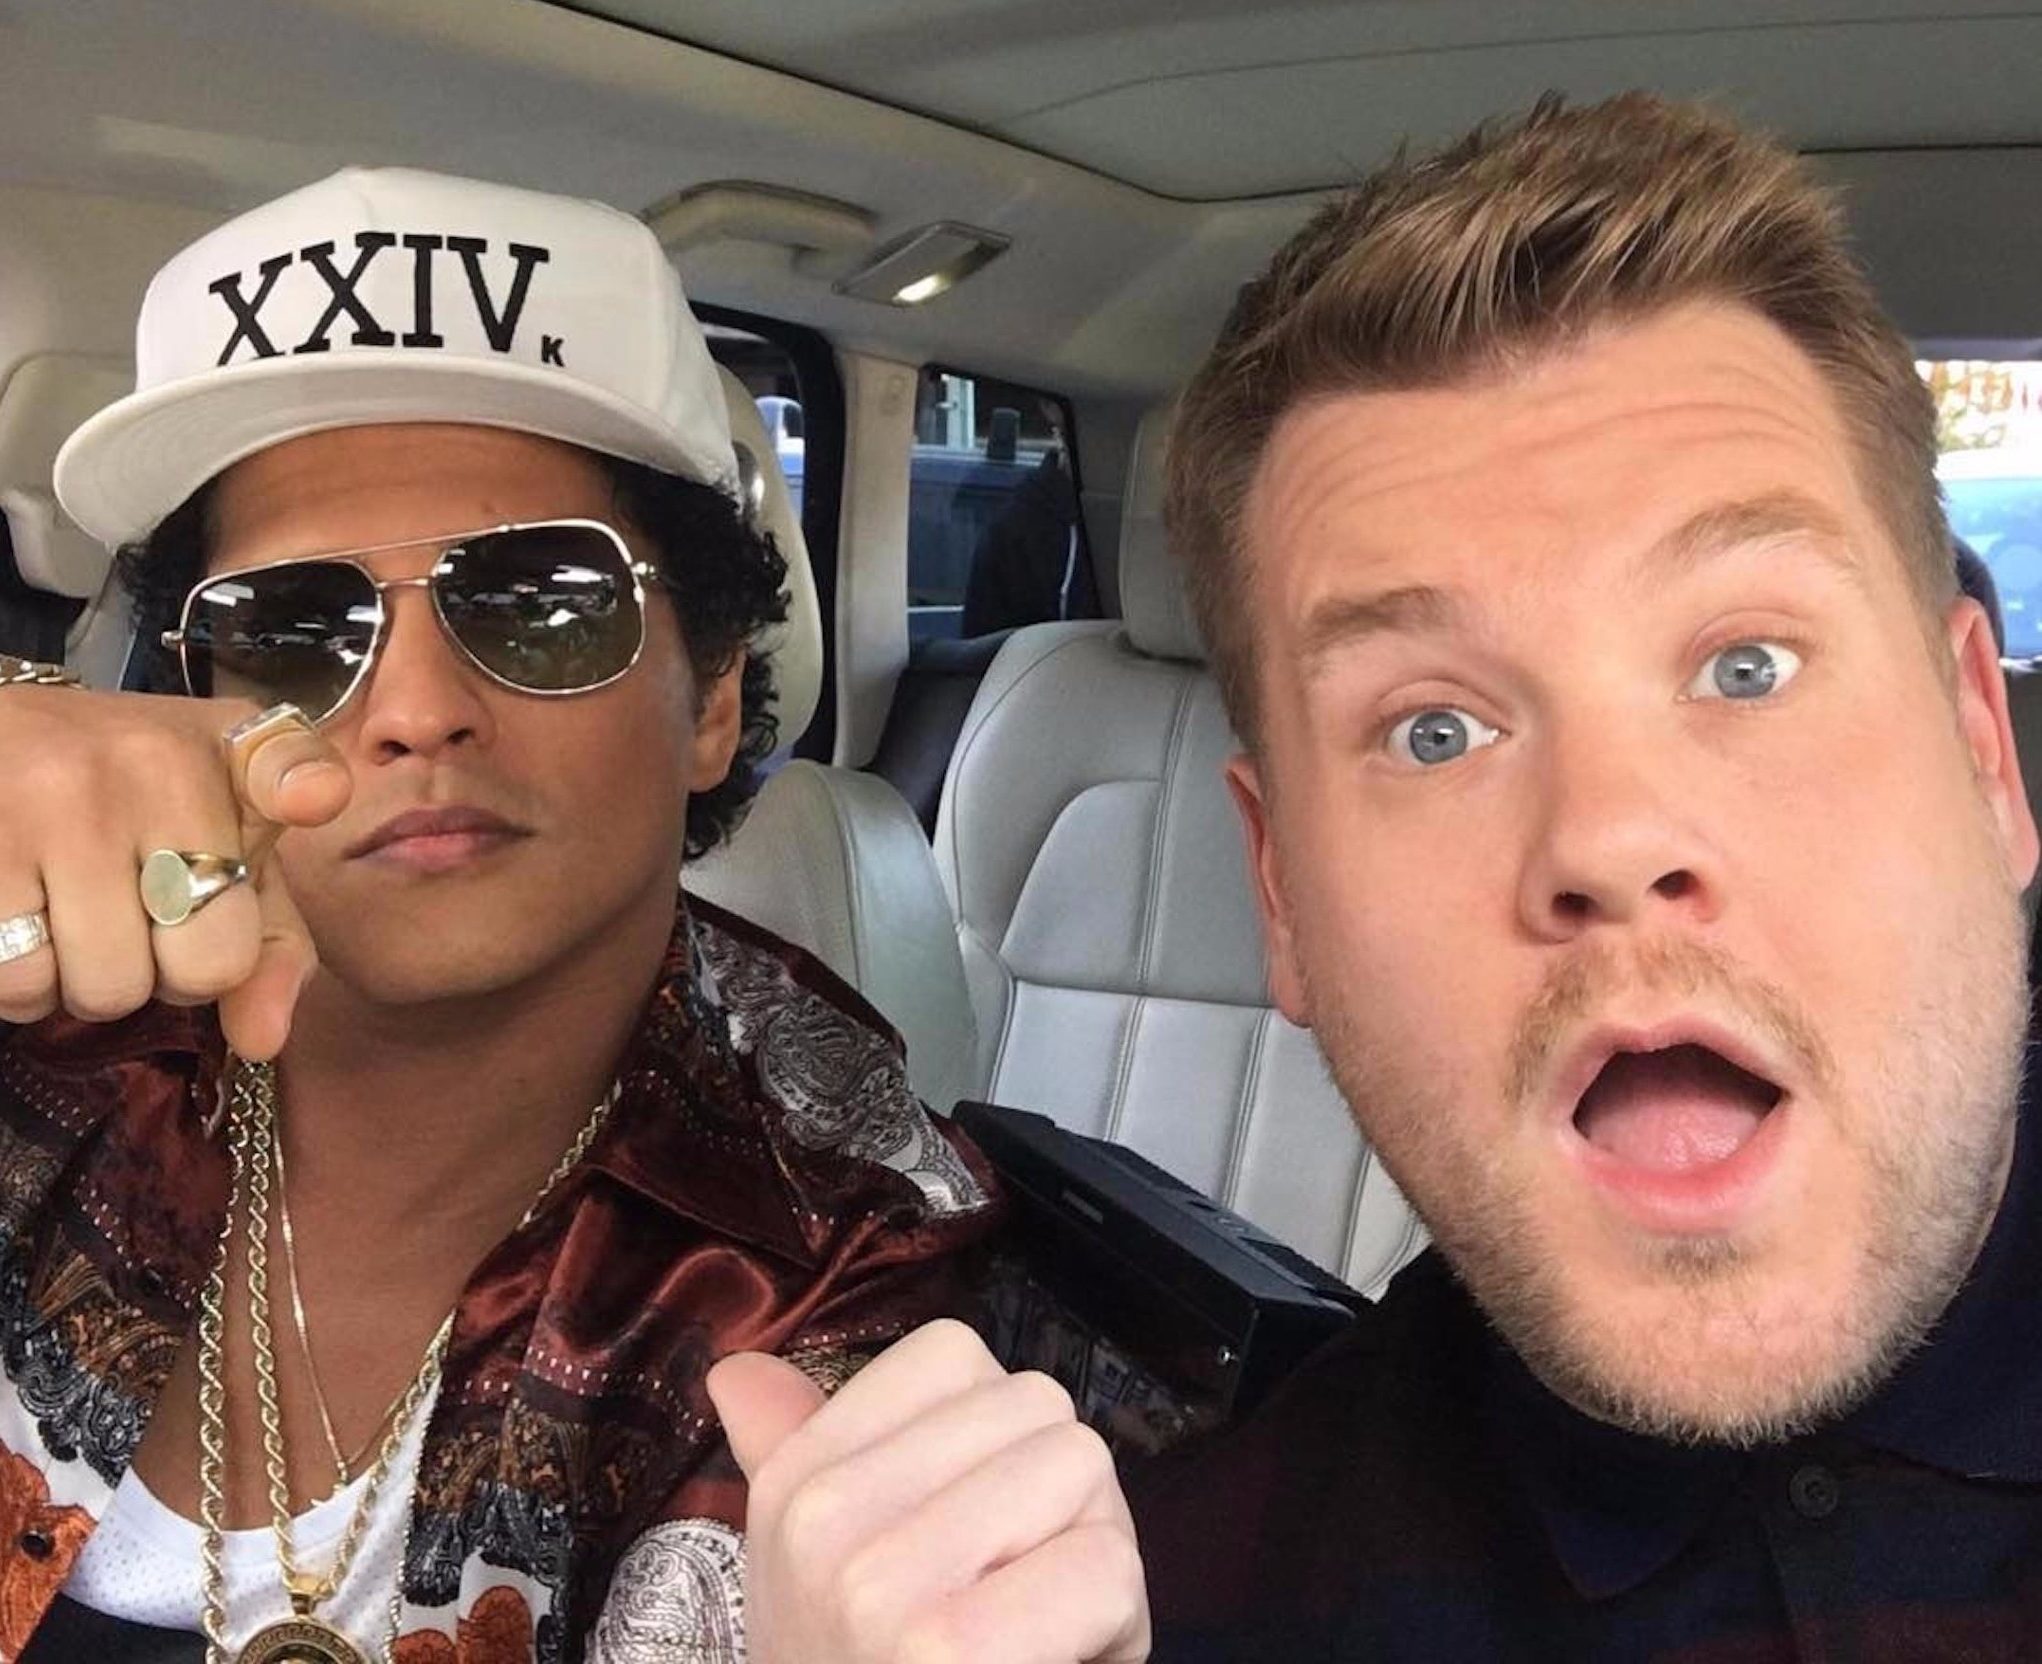 Bruno Mars se presentó en el Carpool Karaoke con James Corden. Cusica Plus